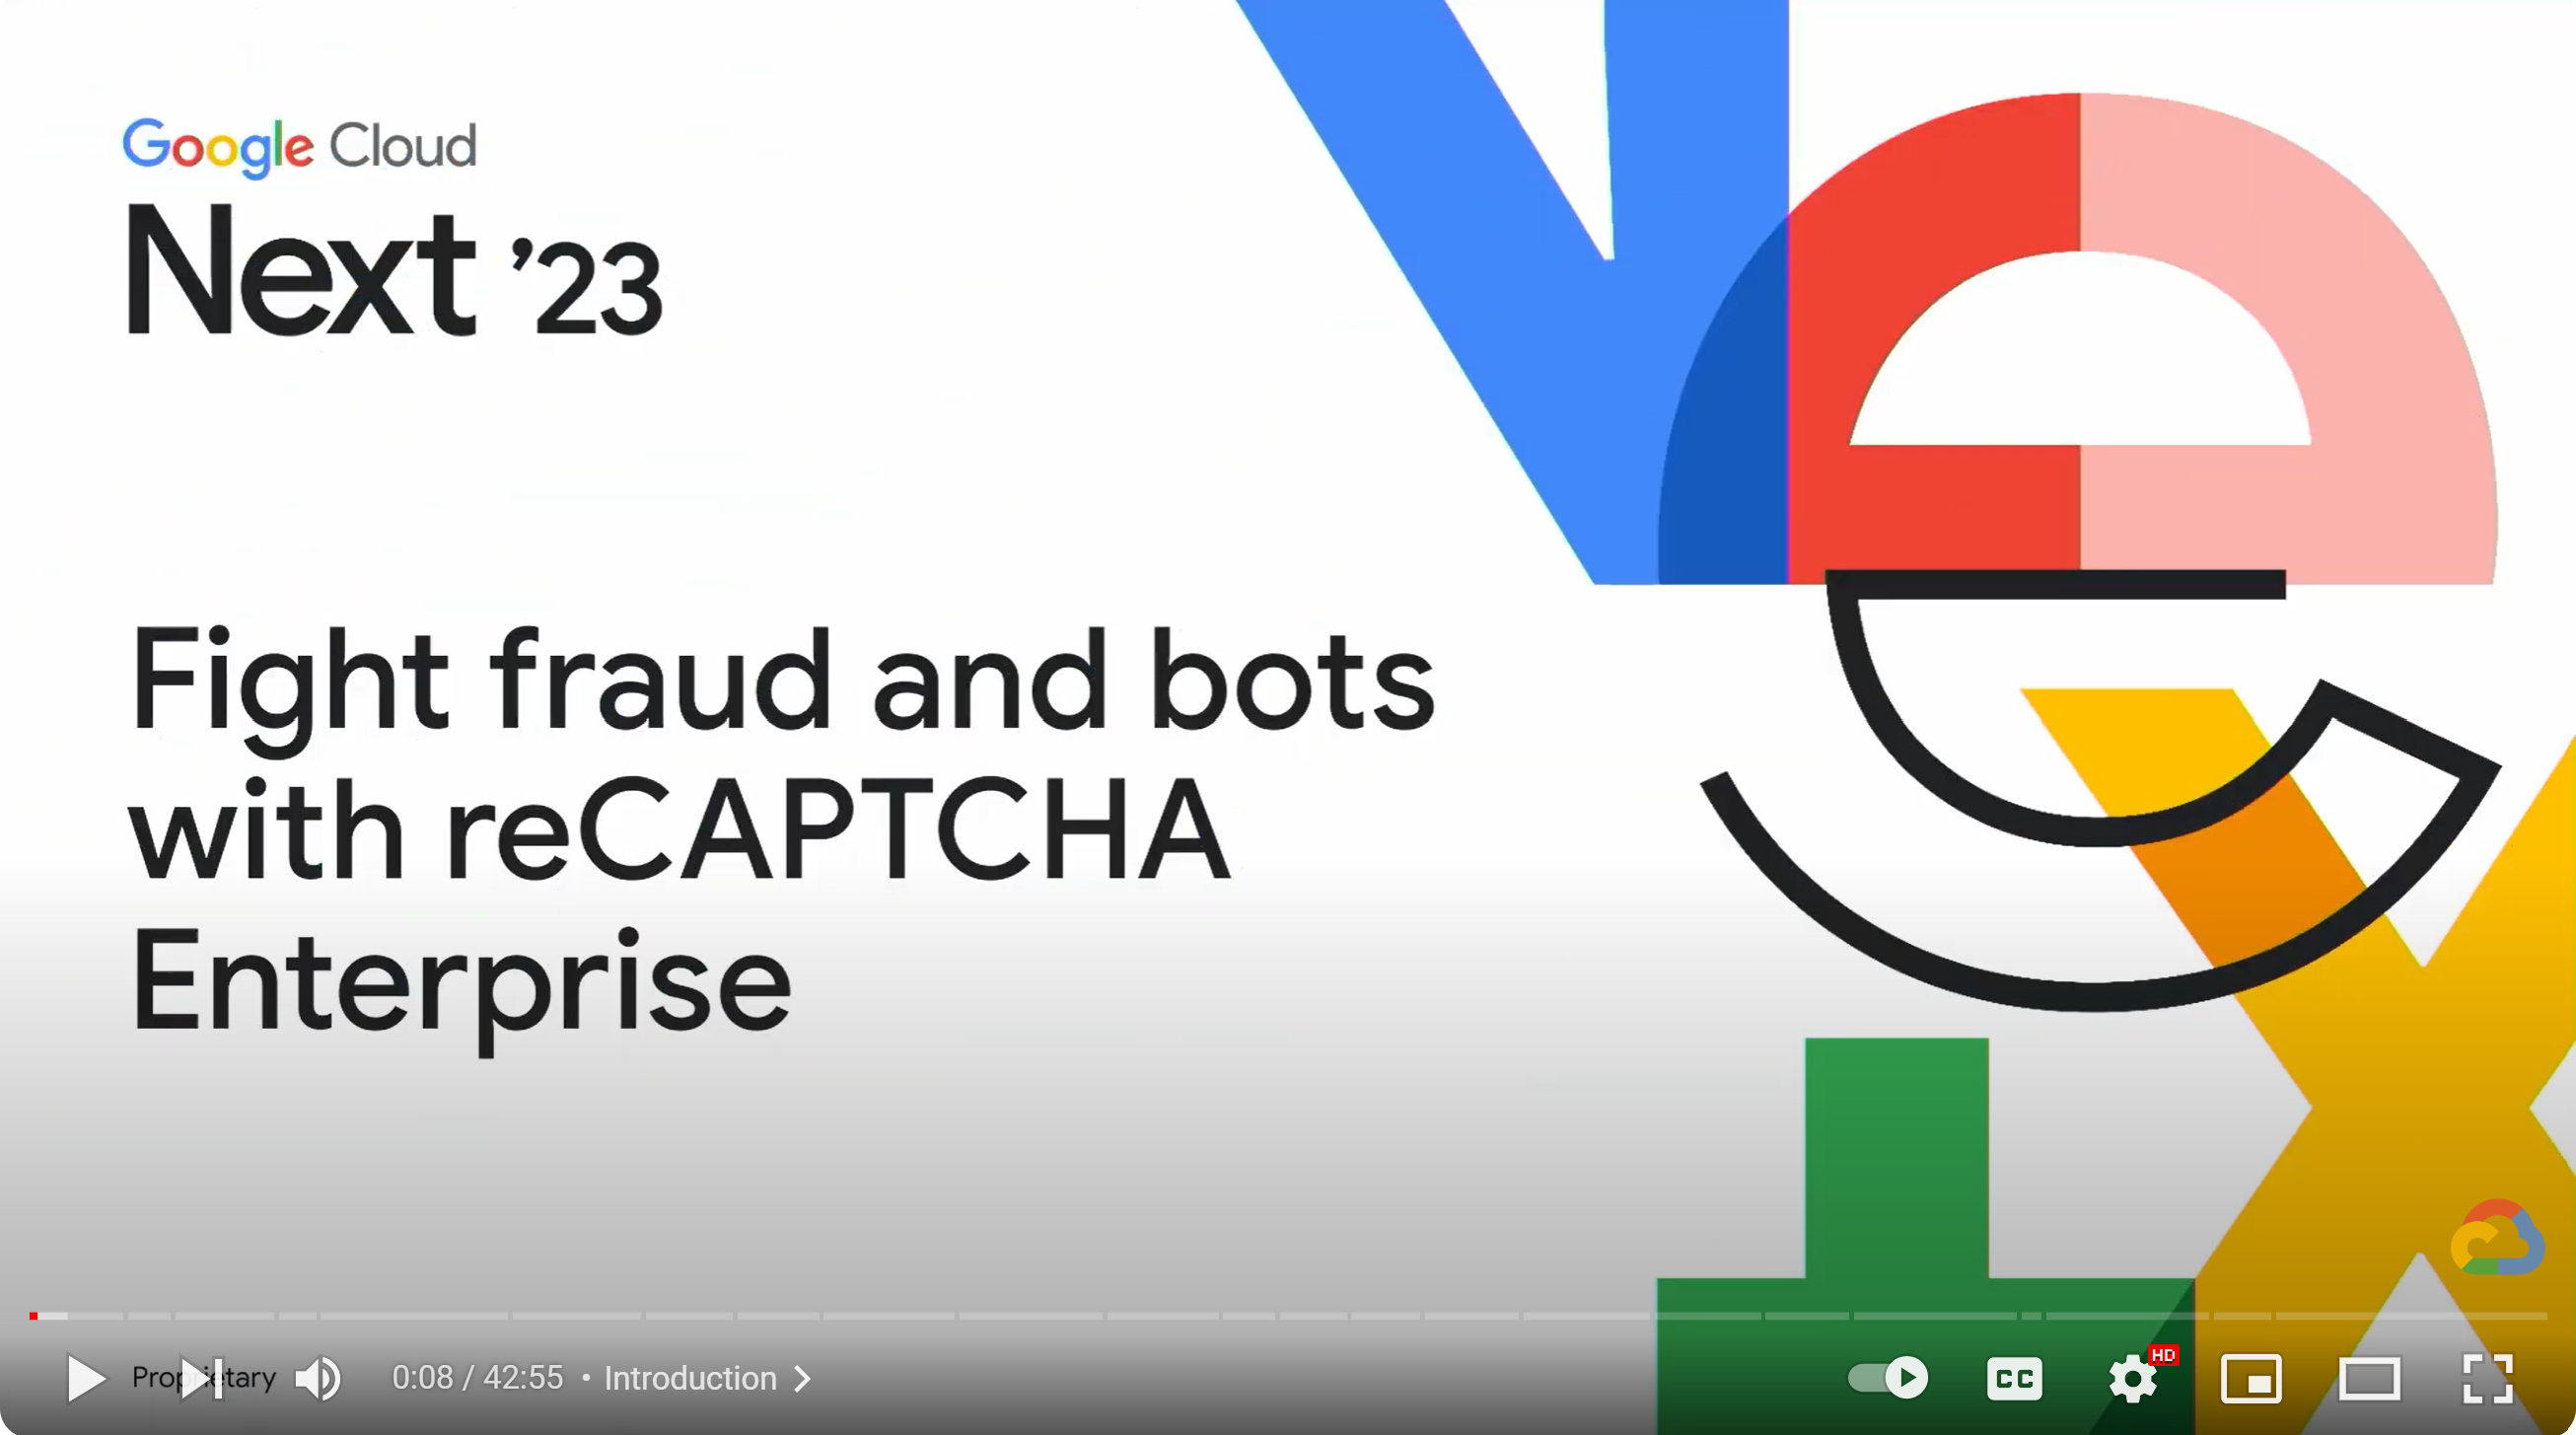 reCAPTCHA Enterprise explicado com o contexto do Google Cloud Next'23